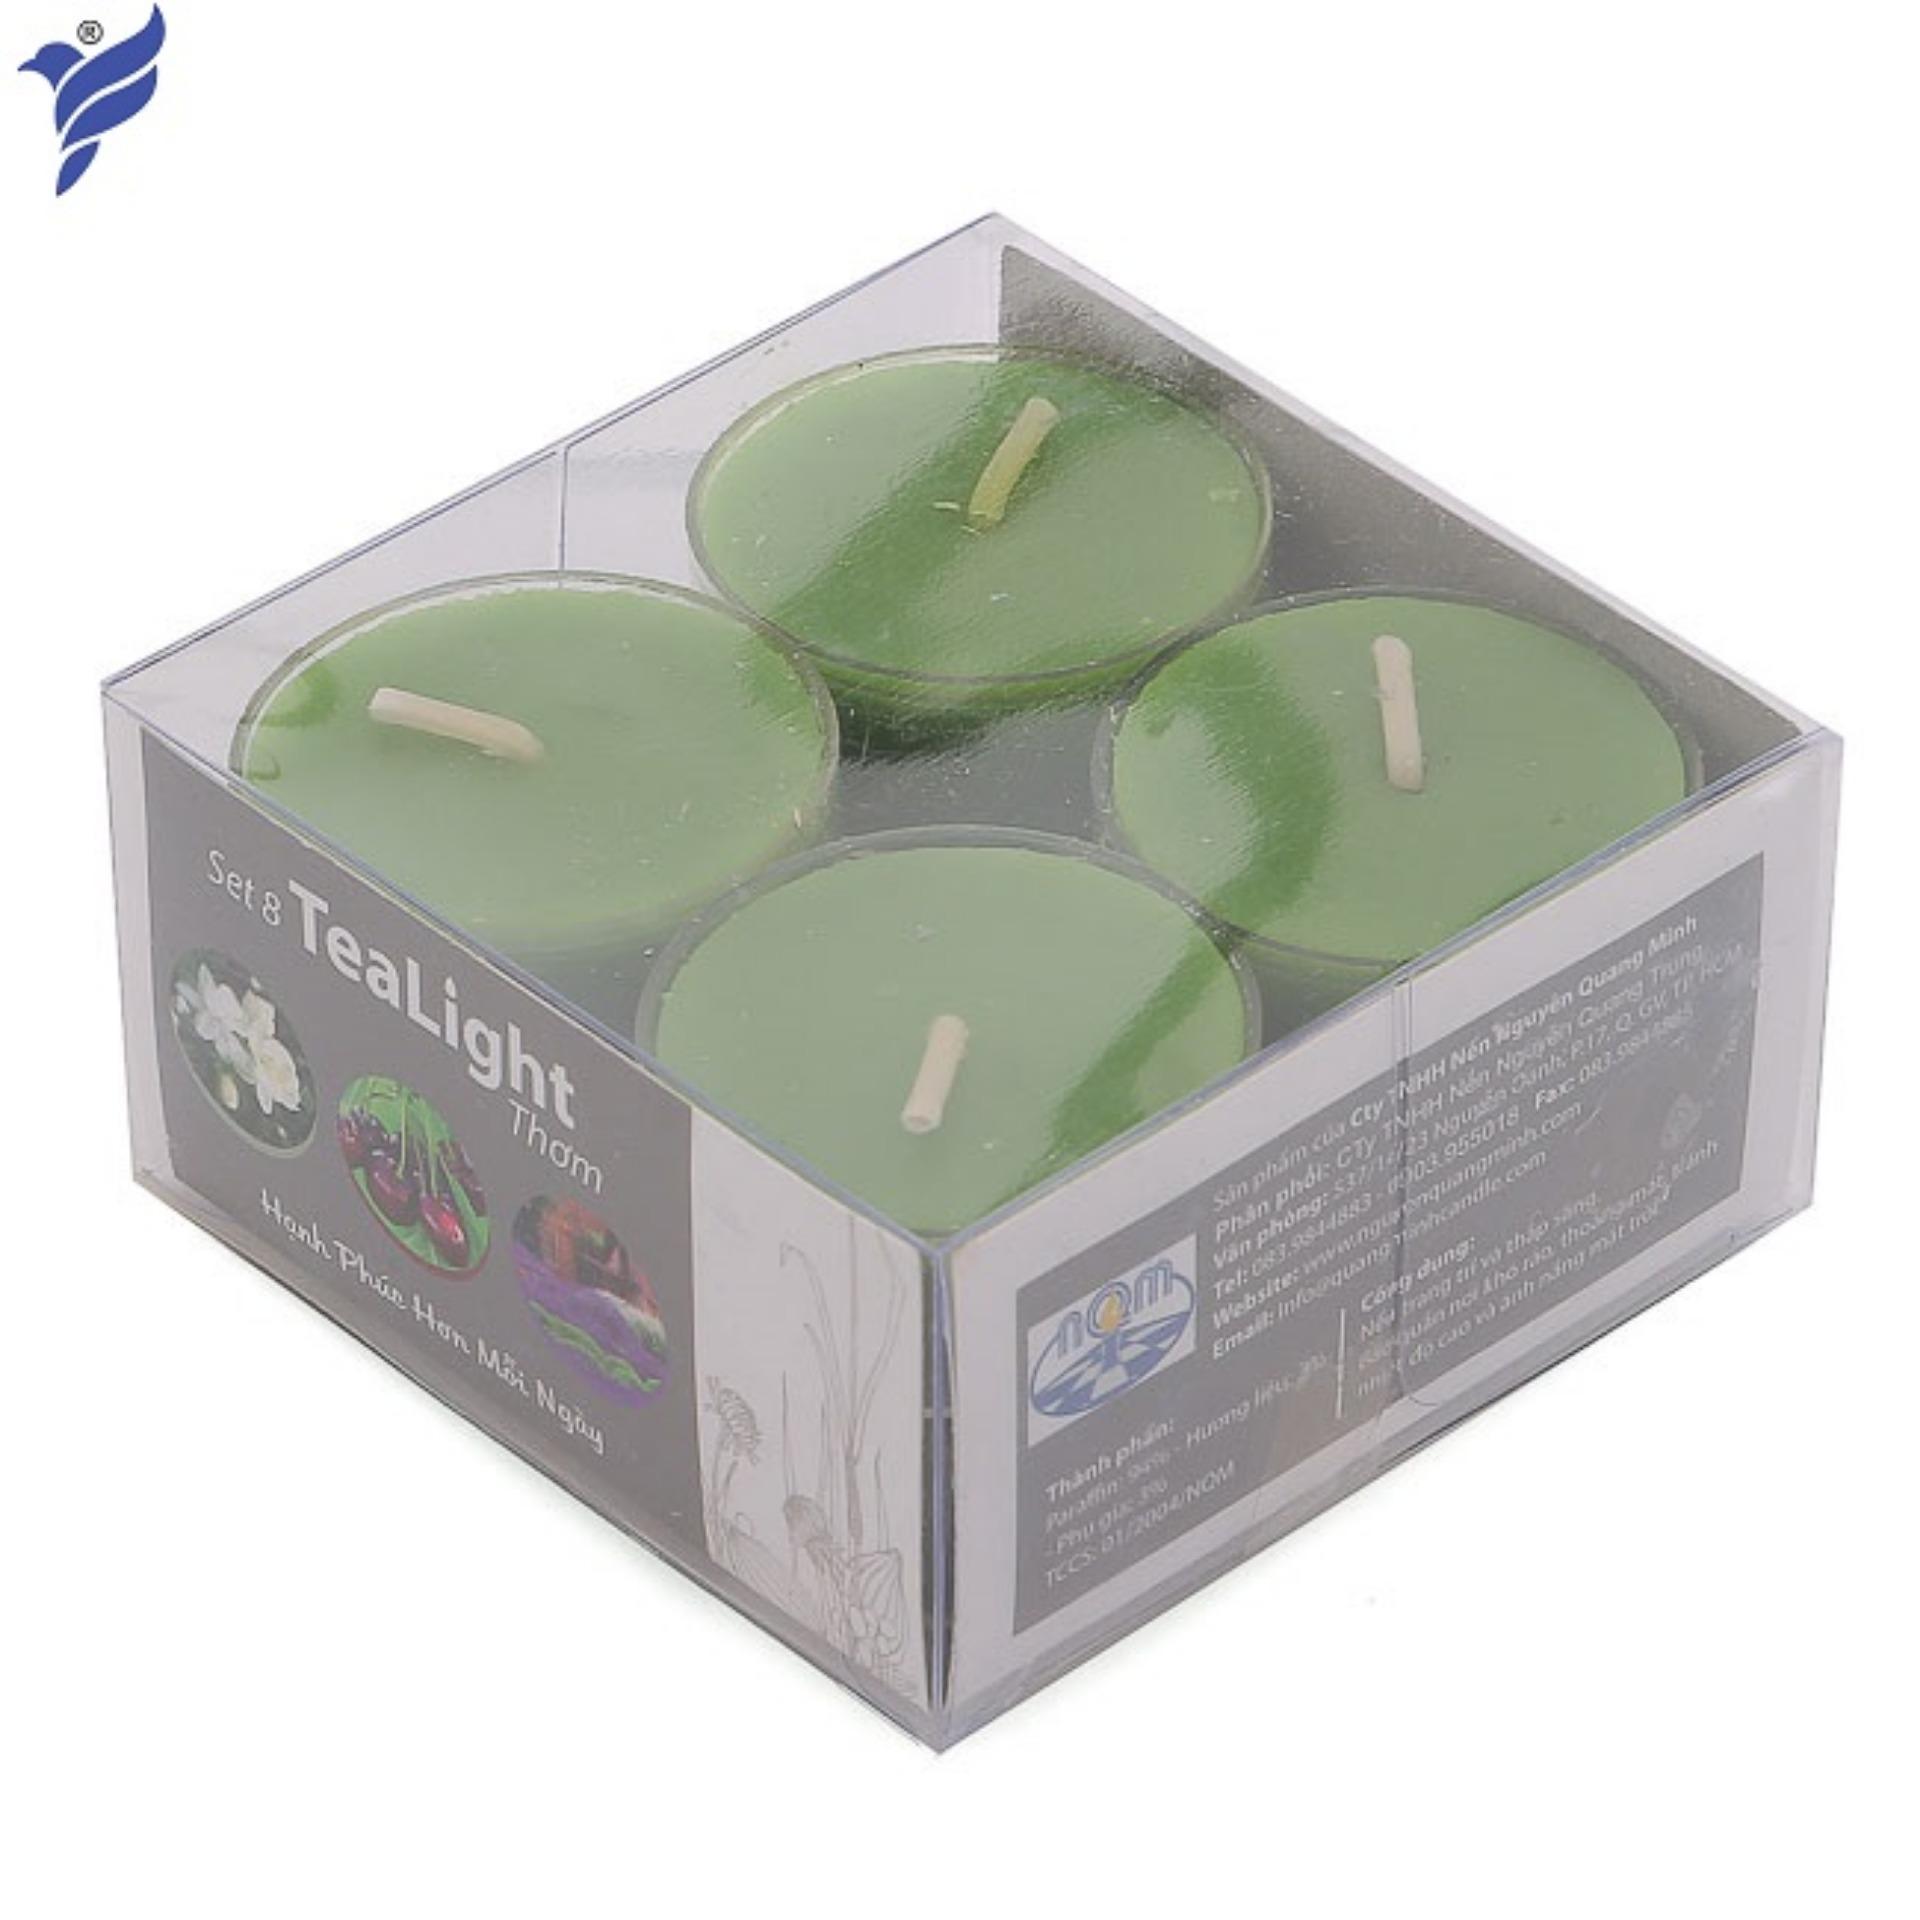 Bộ 6 hộp nến tealight thơm đế nhựa (8 nến/hộp) NQM FtraMart (Xanh lá)